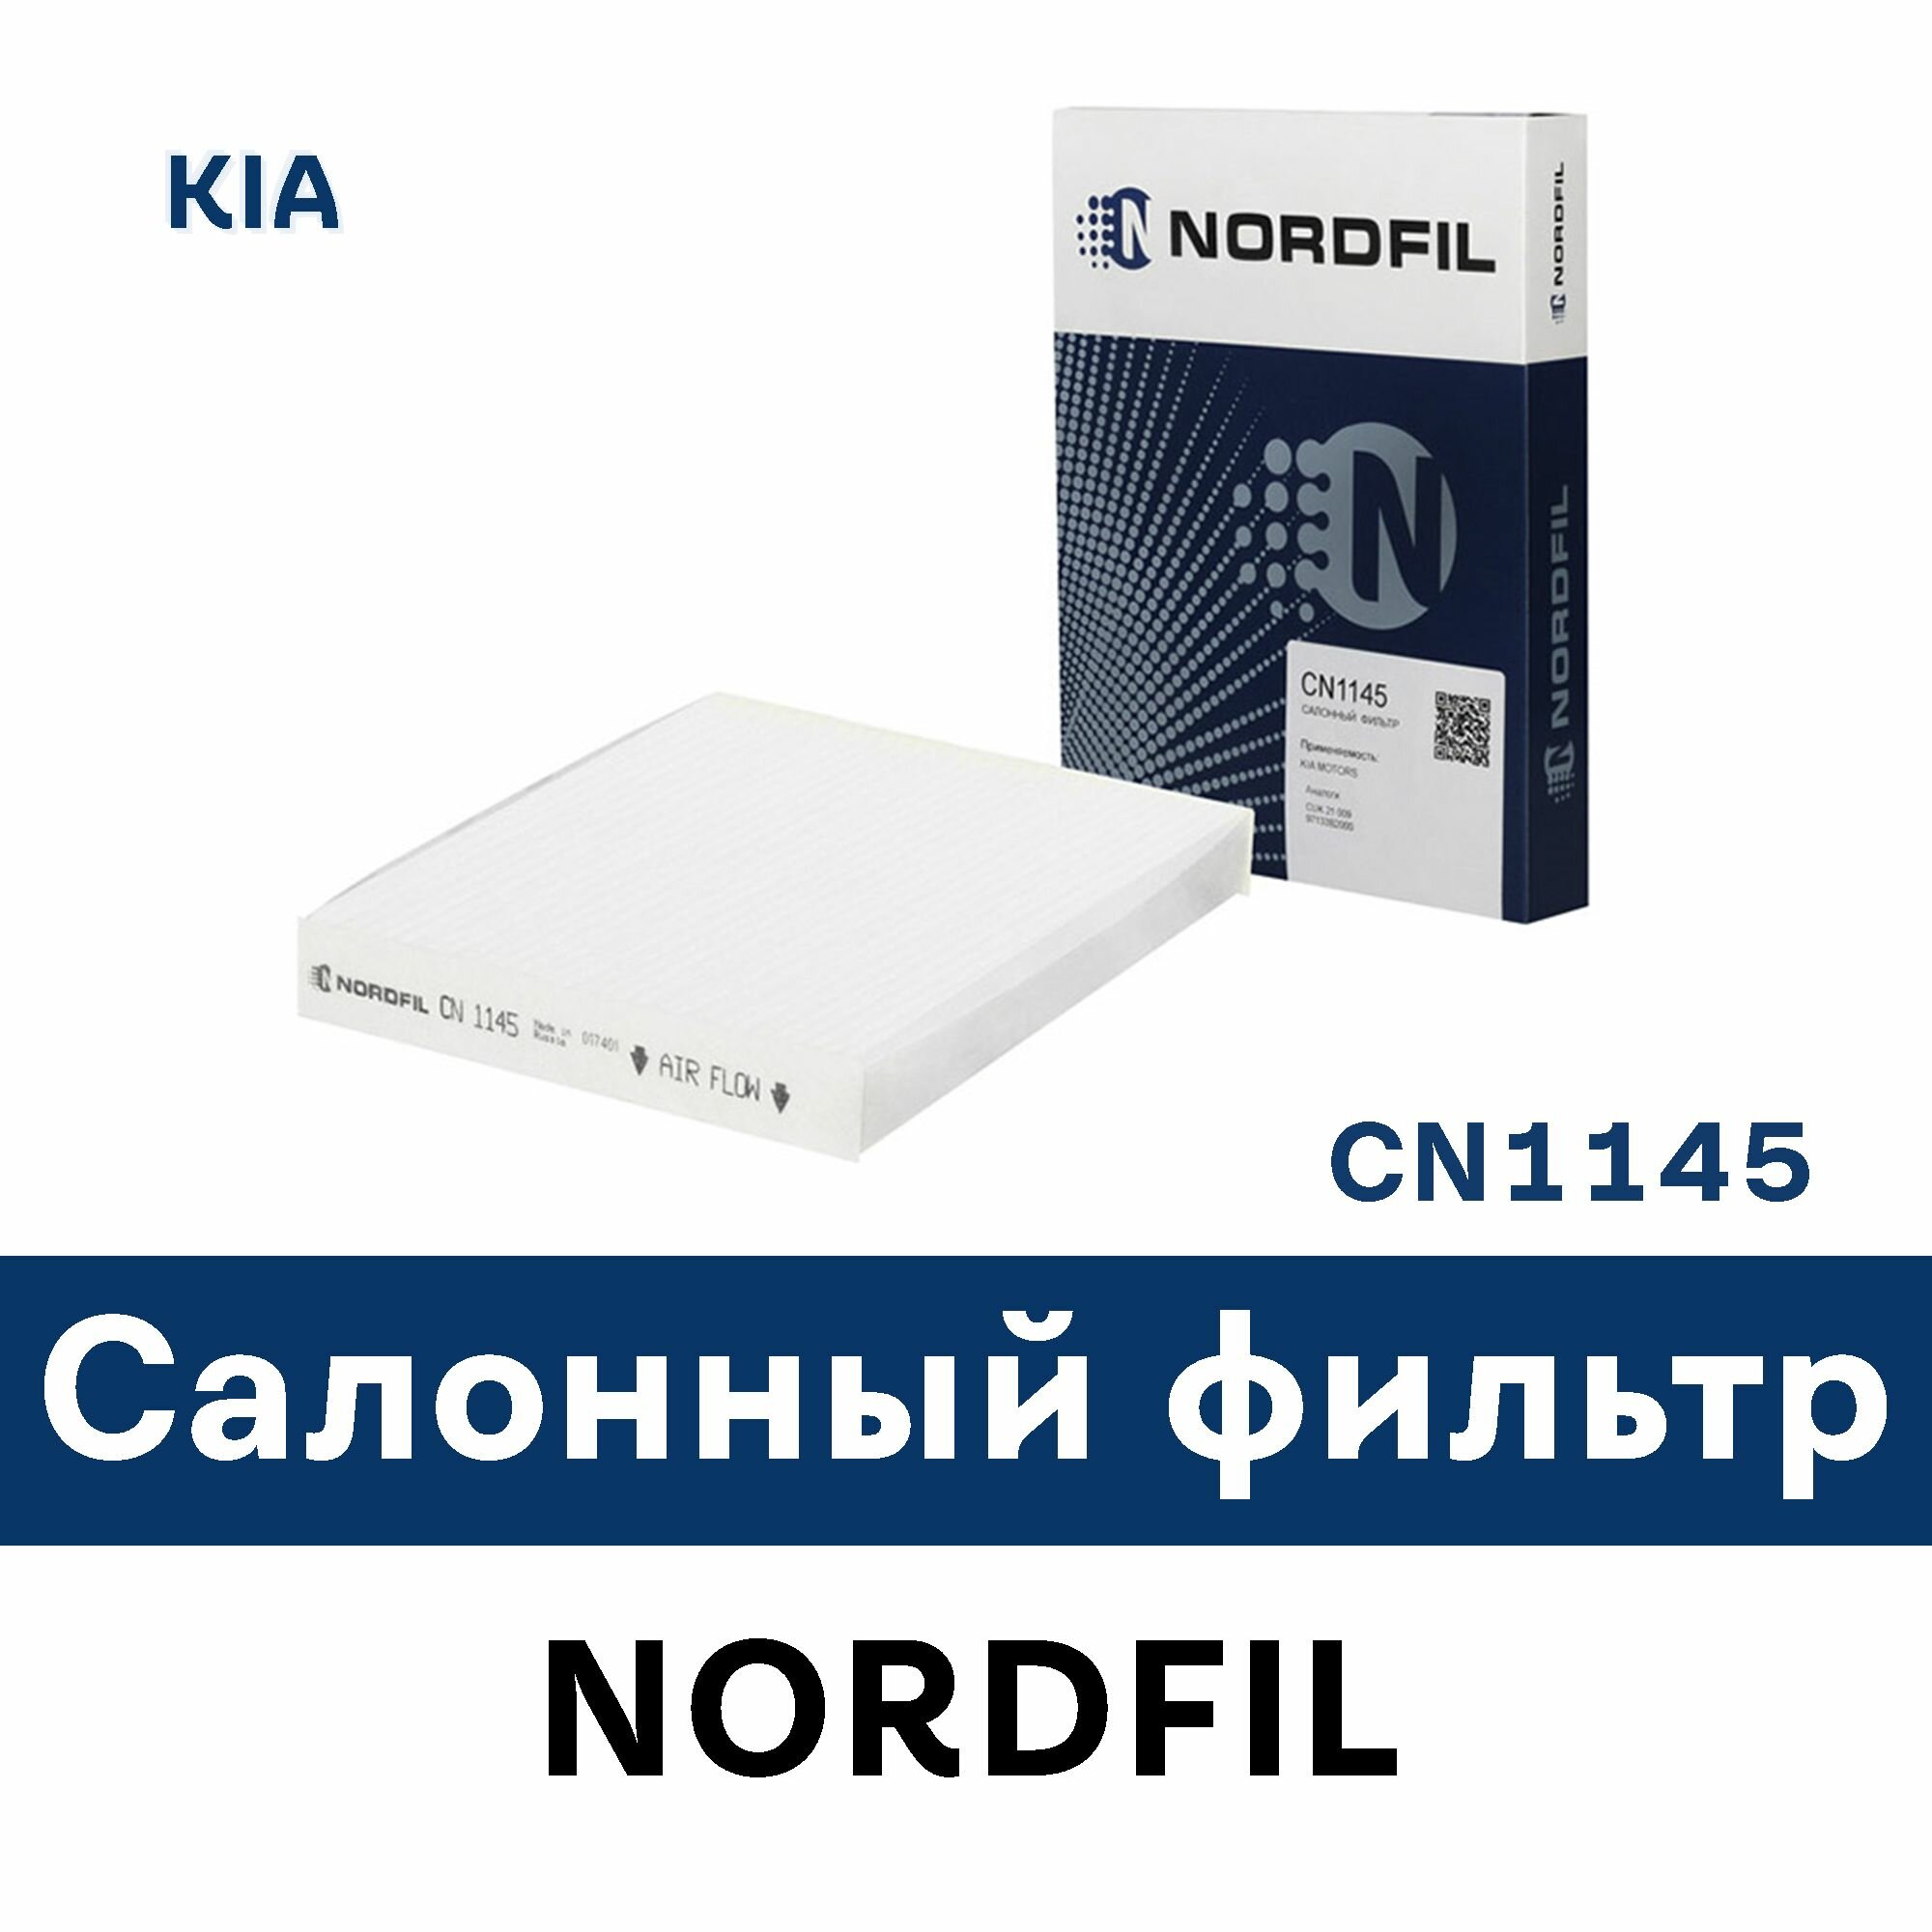 Салонный фильтр для KIA SOUL II (PS) CN1145 NORDFIL